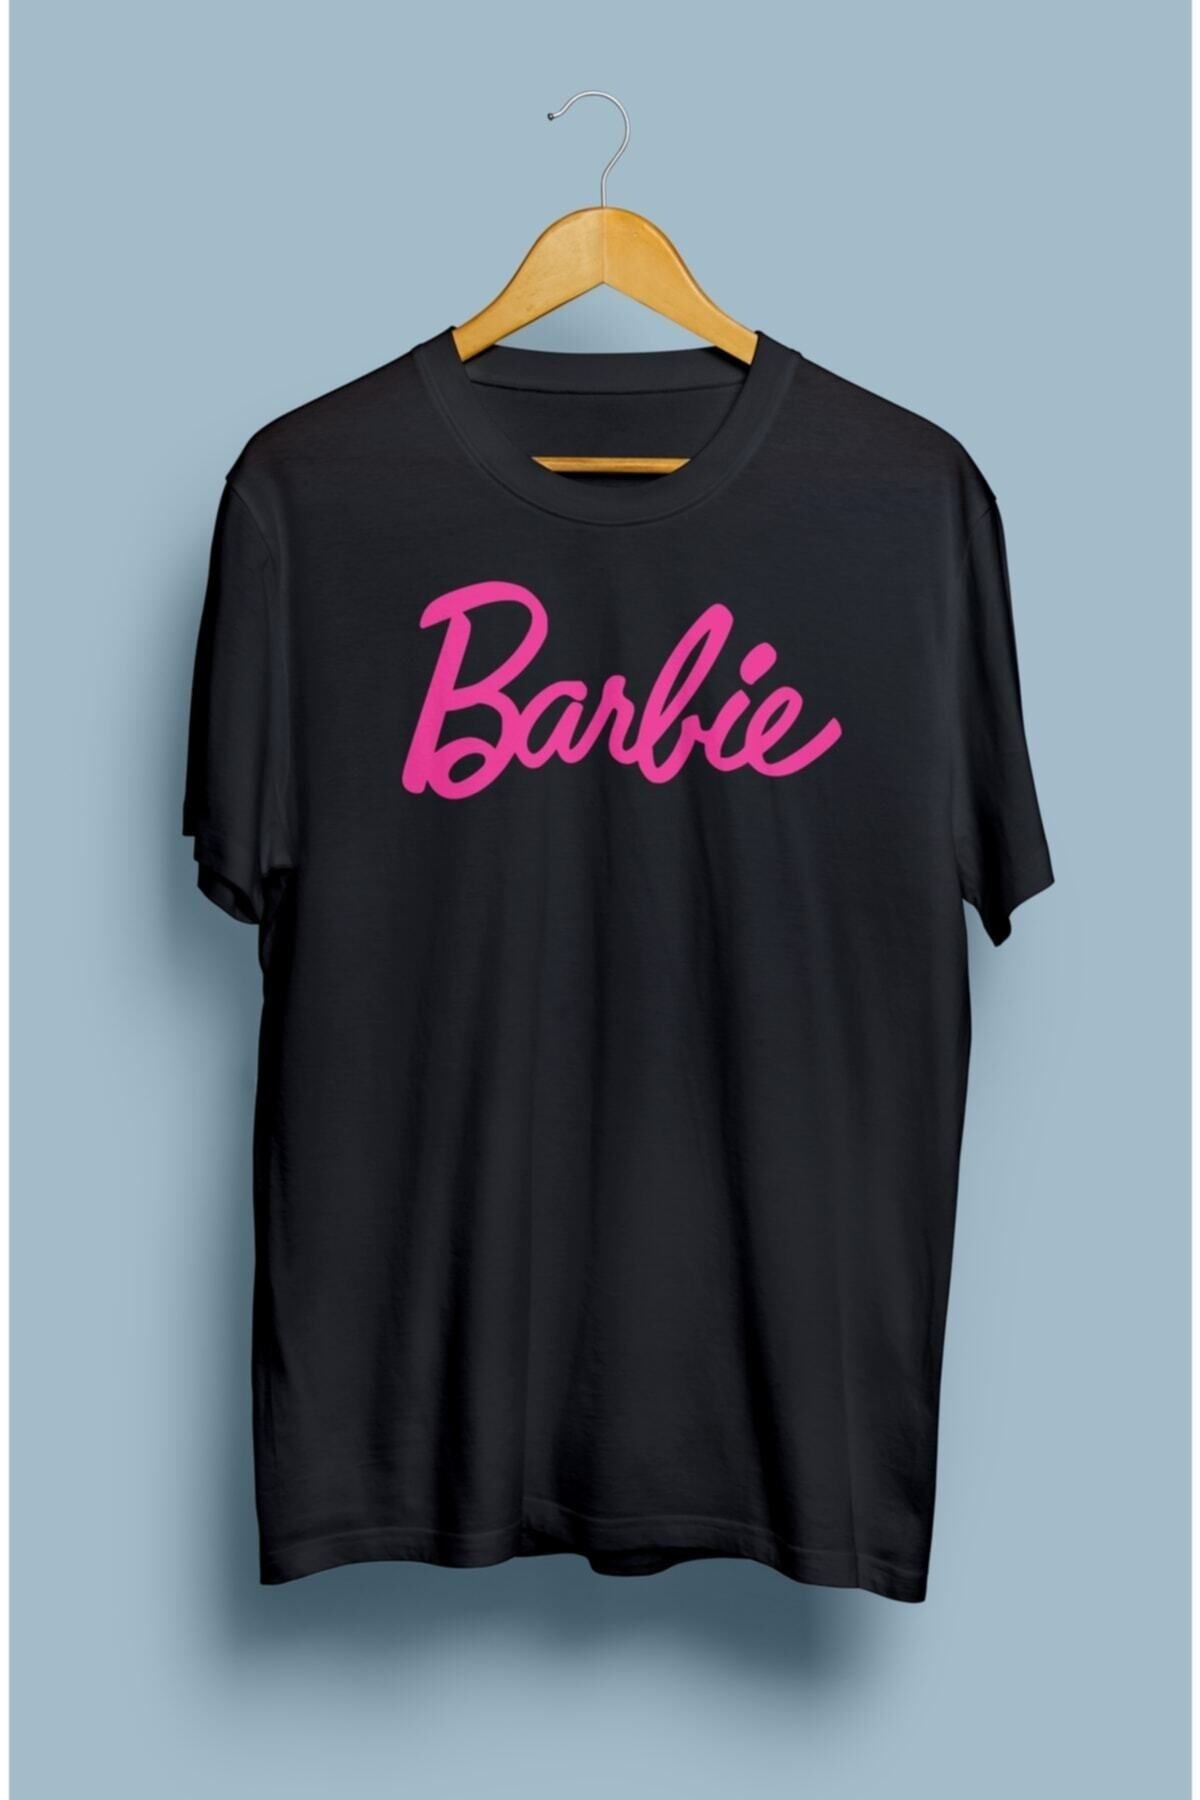 MARECASH Barbie Tasarım Baskılı Tişört